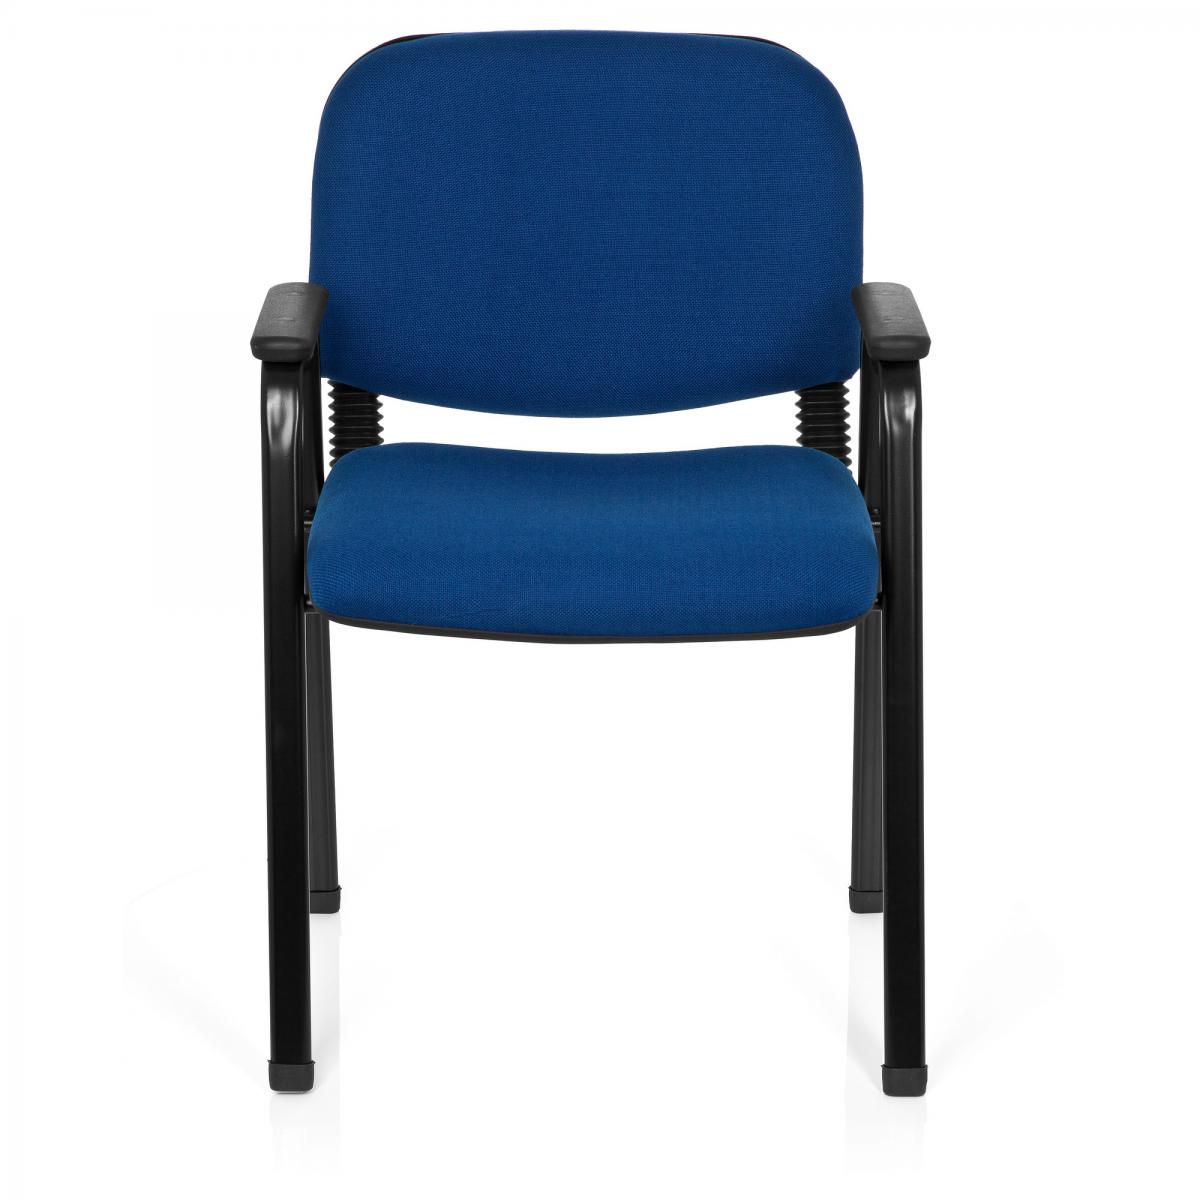 Hjh Office - Chaise visiteur / Chaise XT 650 noir/bleu hjh OFFICE - Chaises